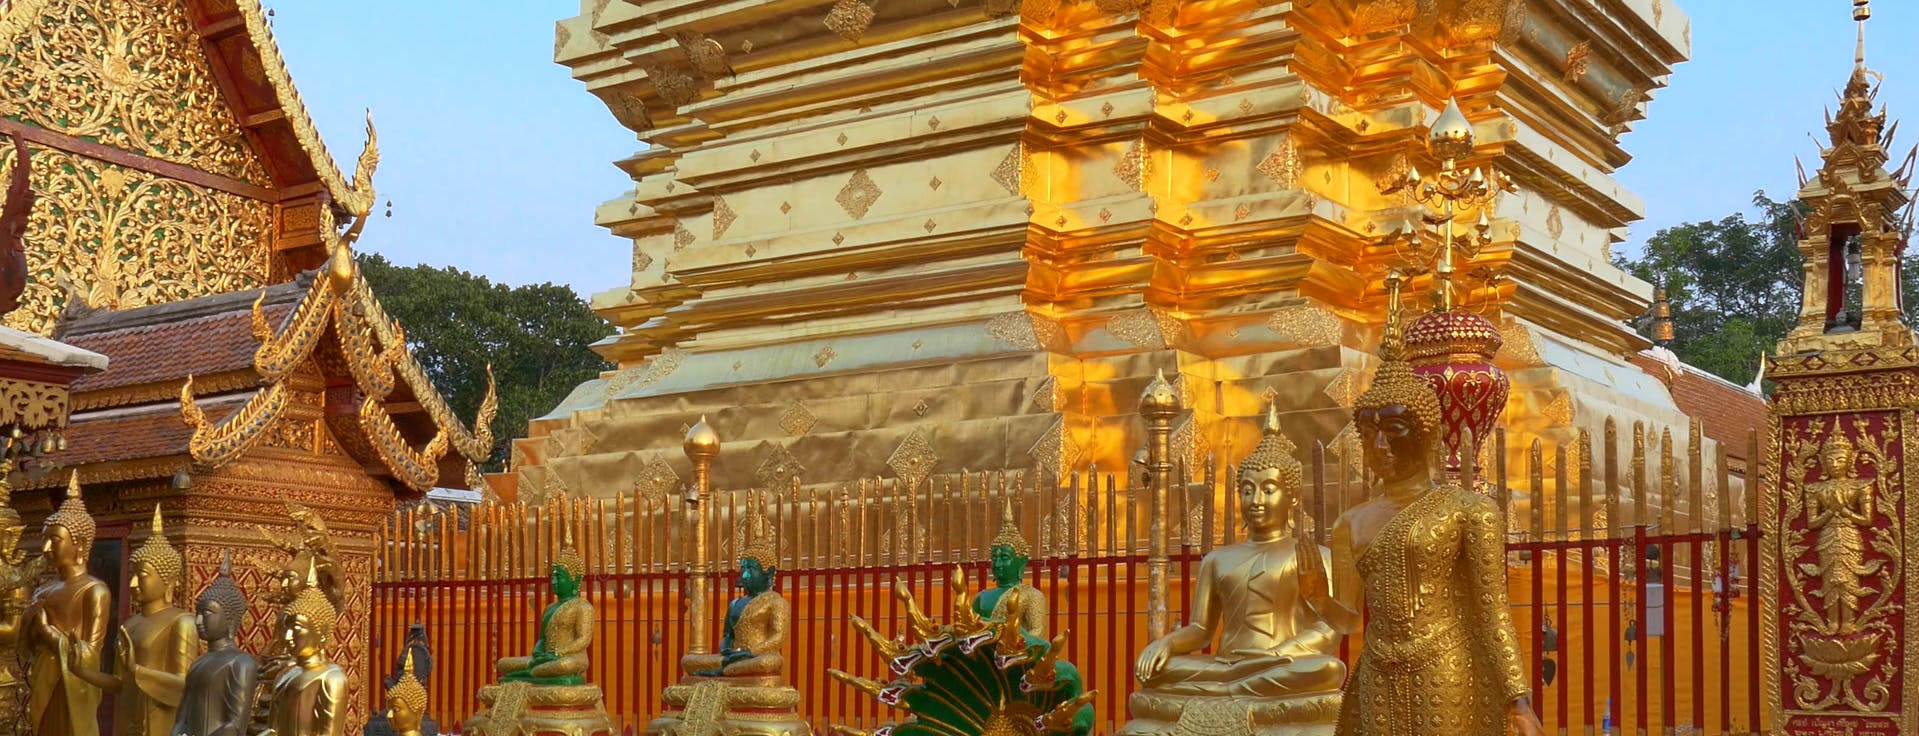 Excursão pela cidade e templos de Chiang Mai